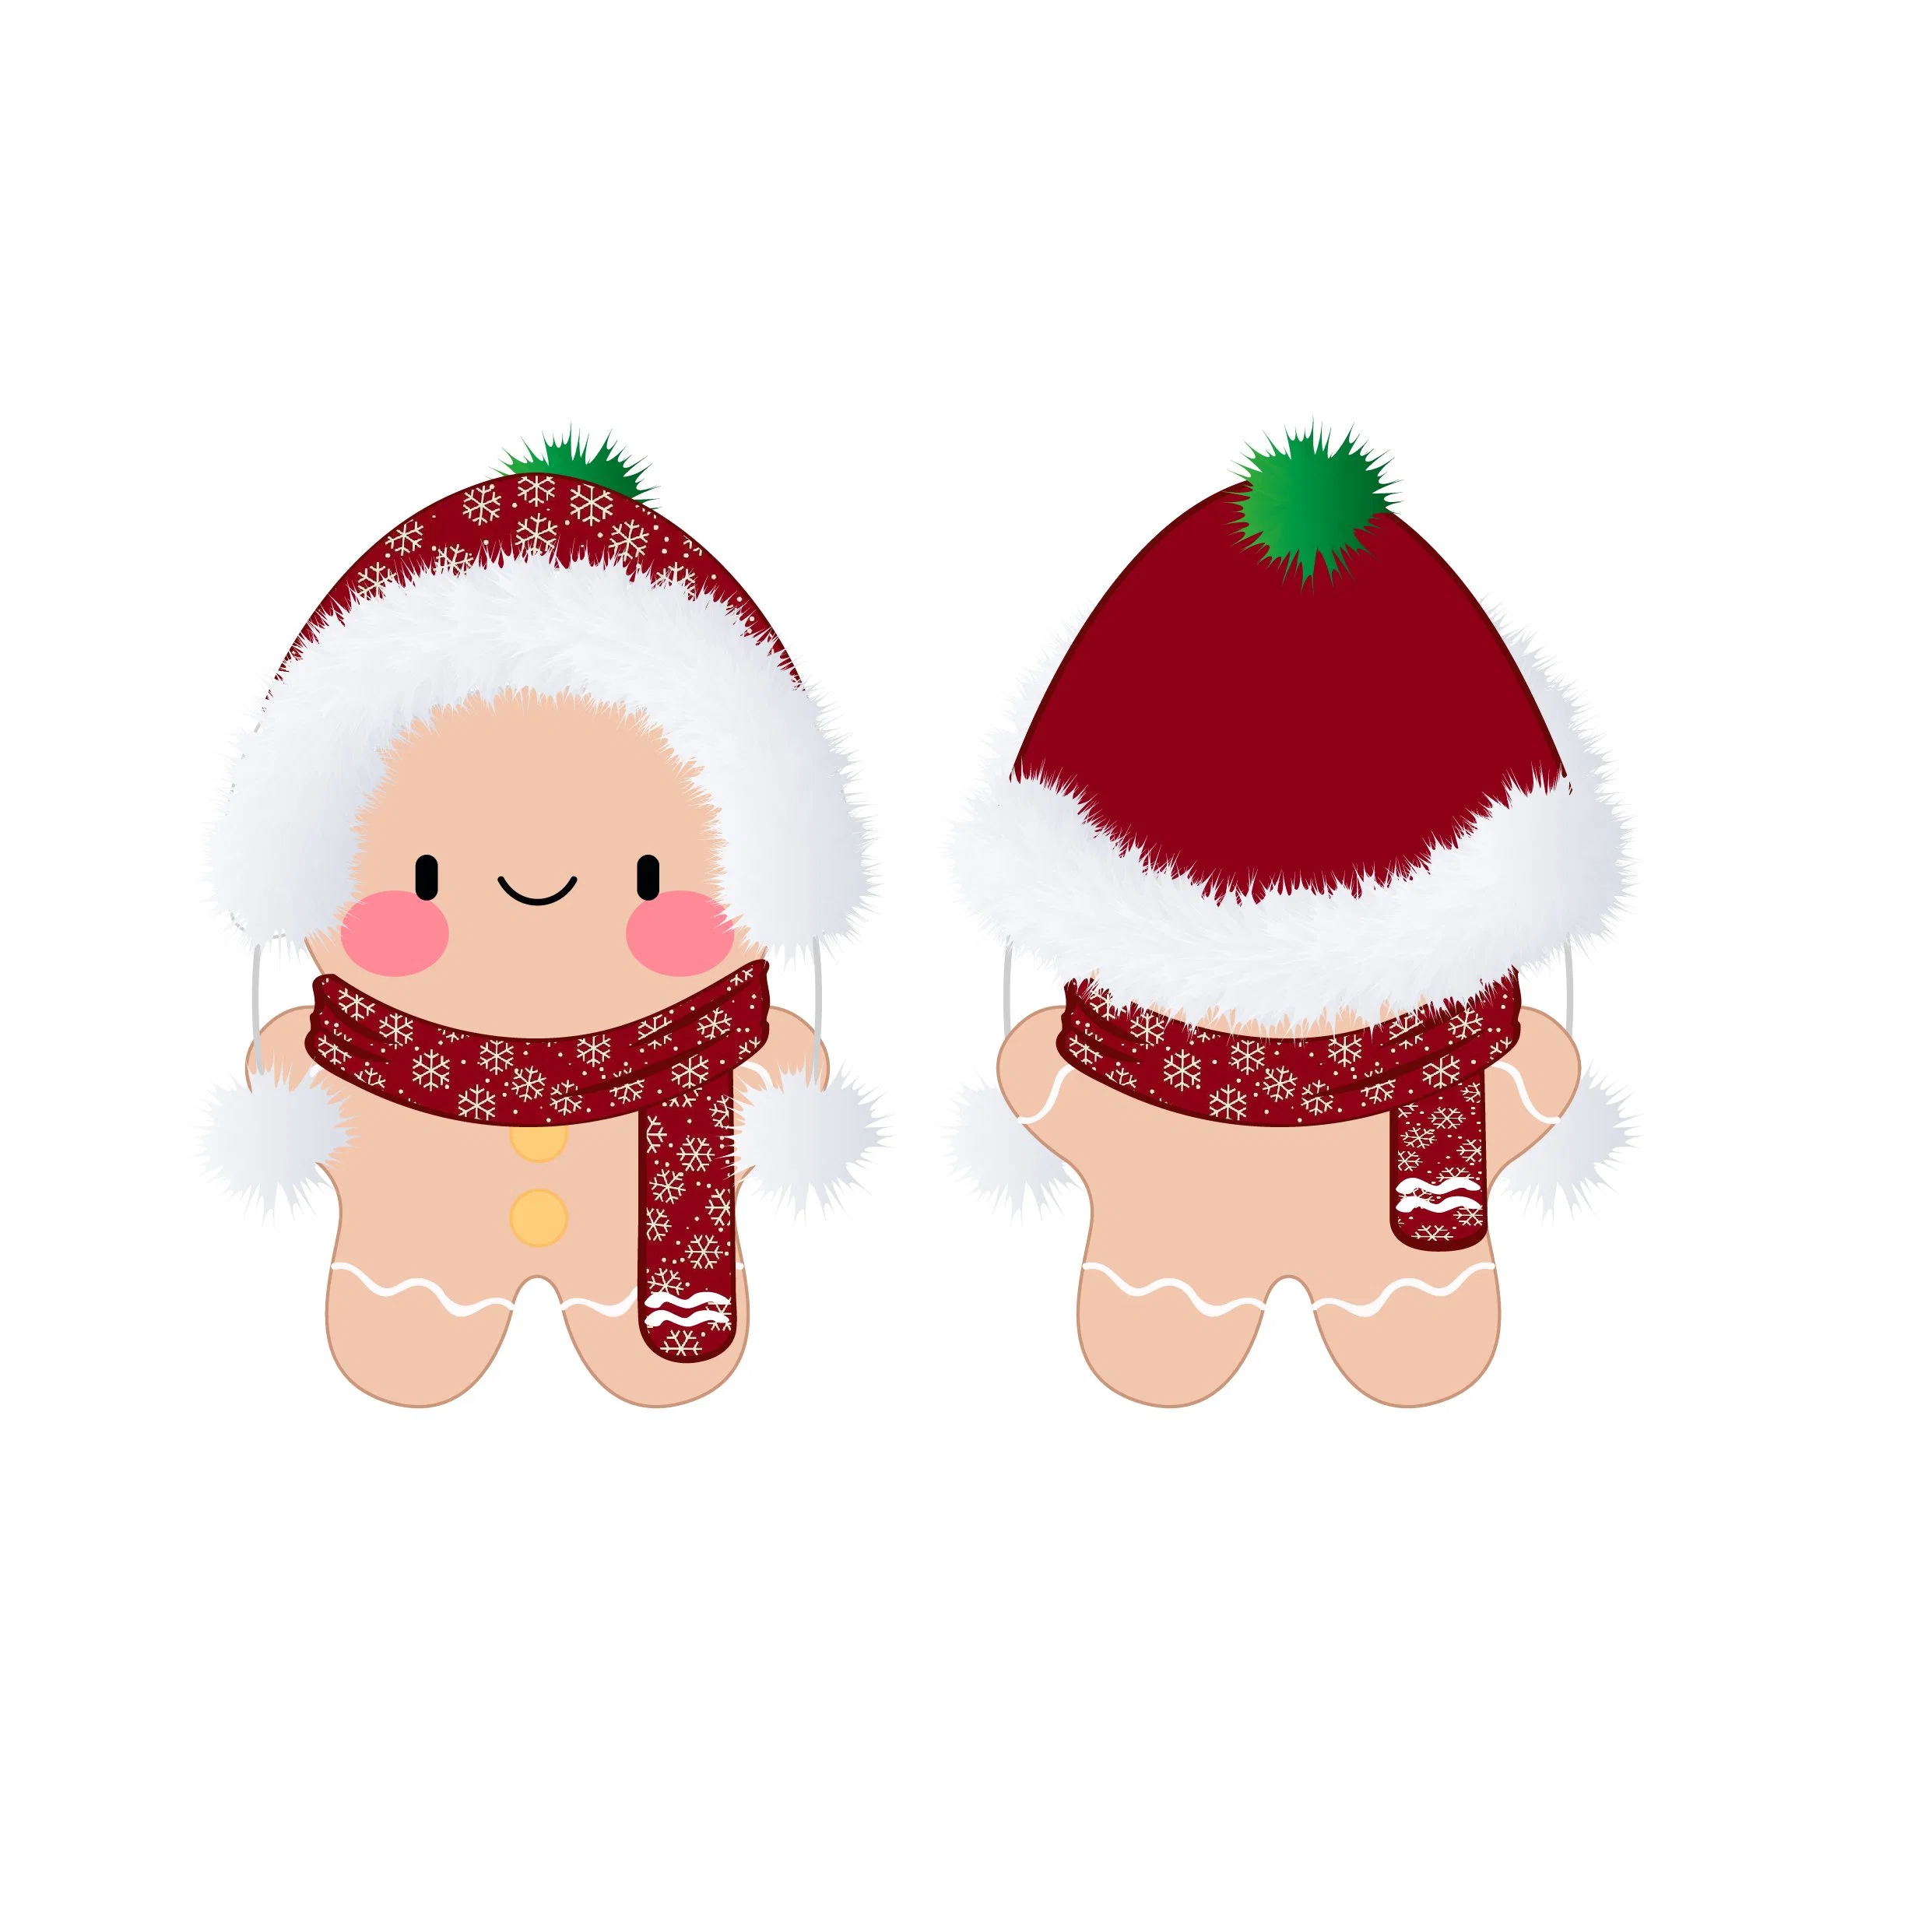 Custom Рождество Мягкие плюшевые игрушки игрушки с Red Hat Рождества и Без шарфа